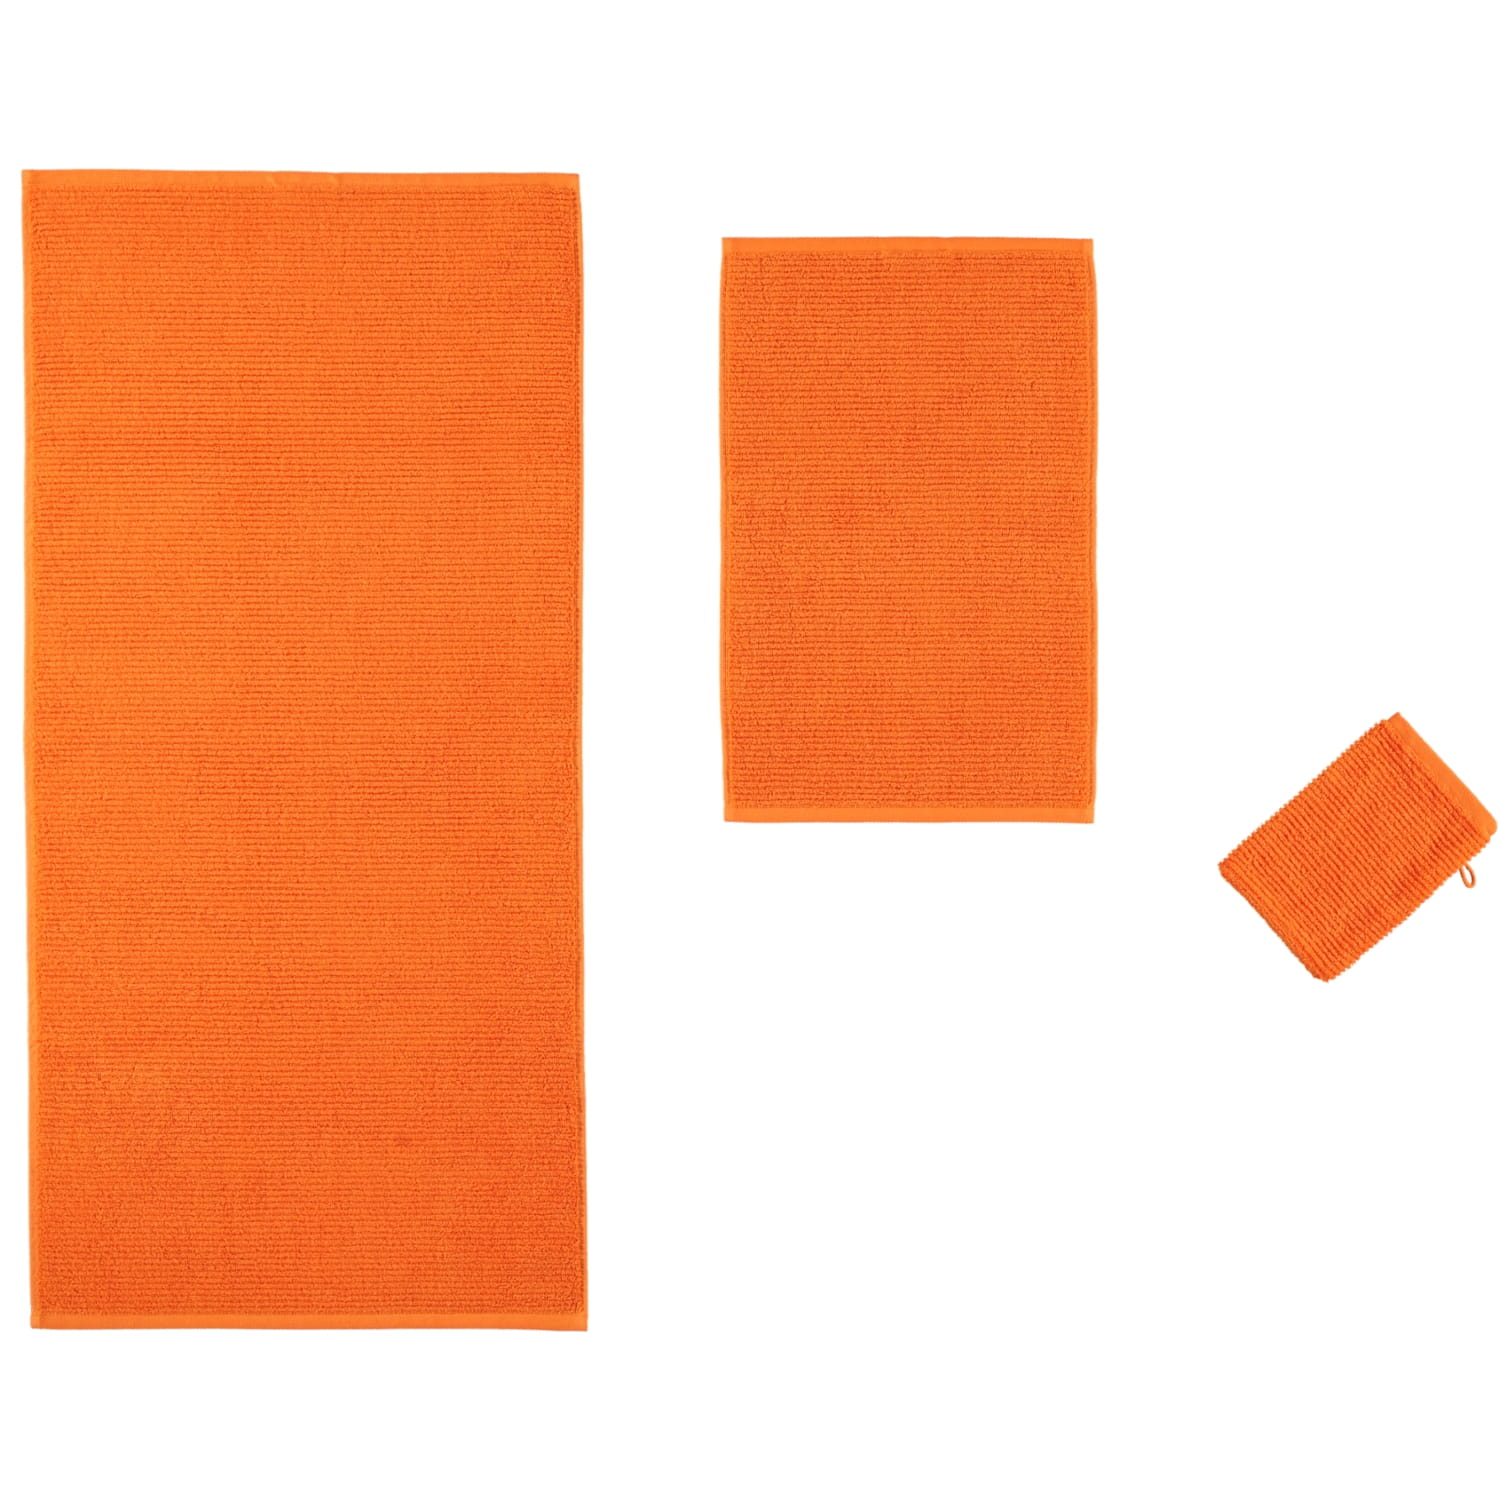 Möve | 106 Uni - Marken - Handtücher orange | Möve Farbe: Elements Möve |